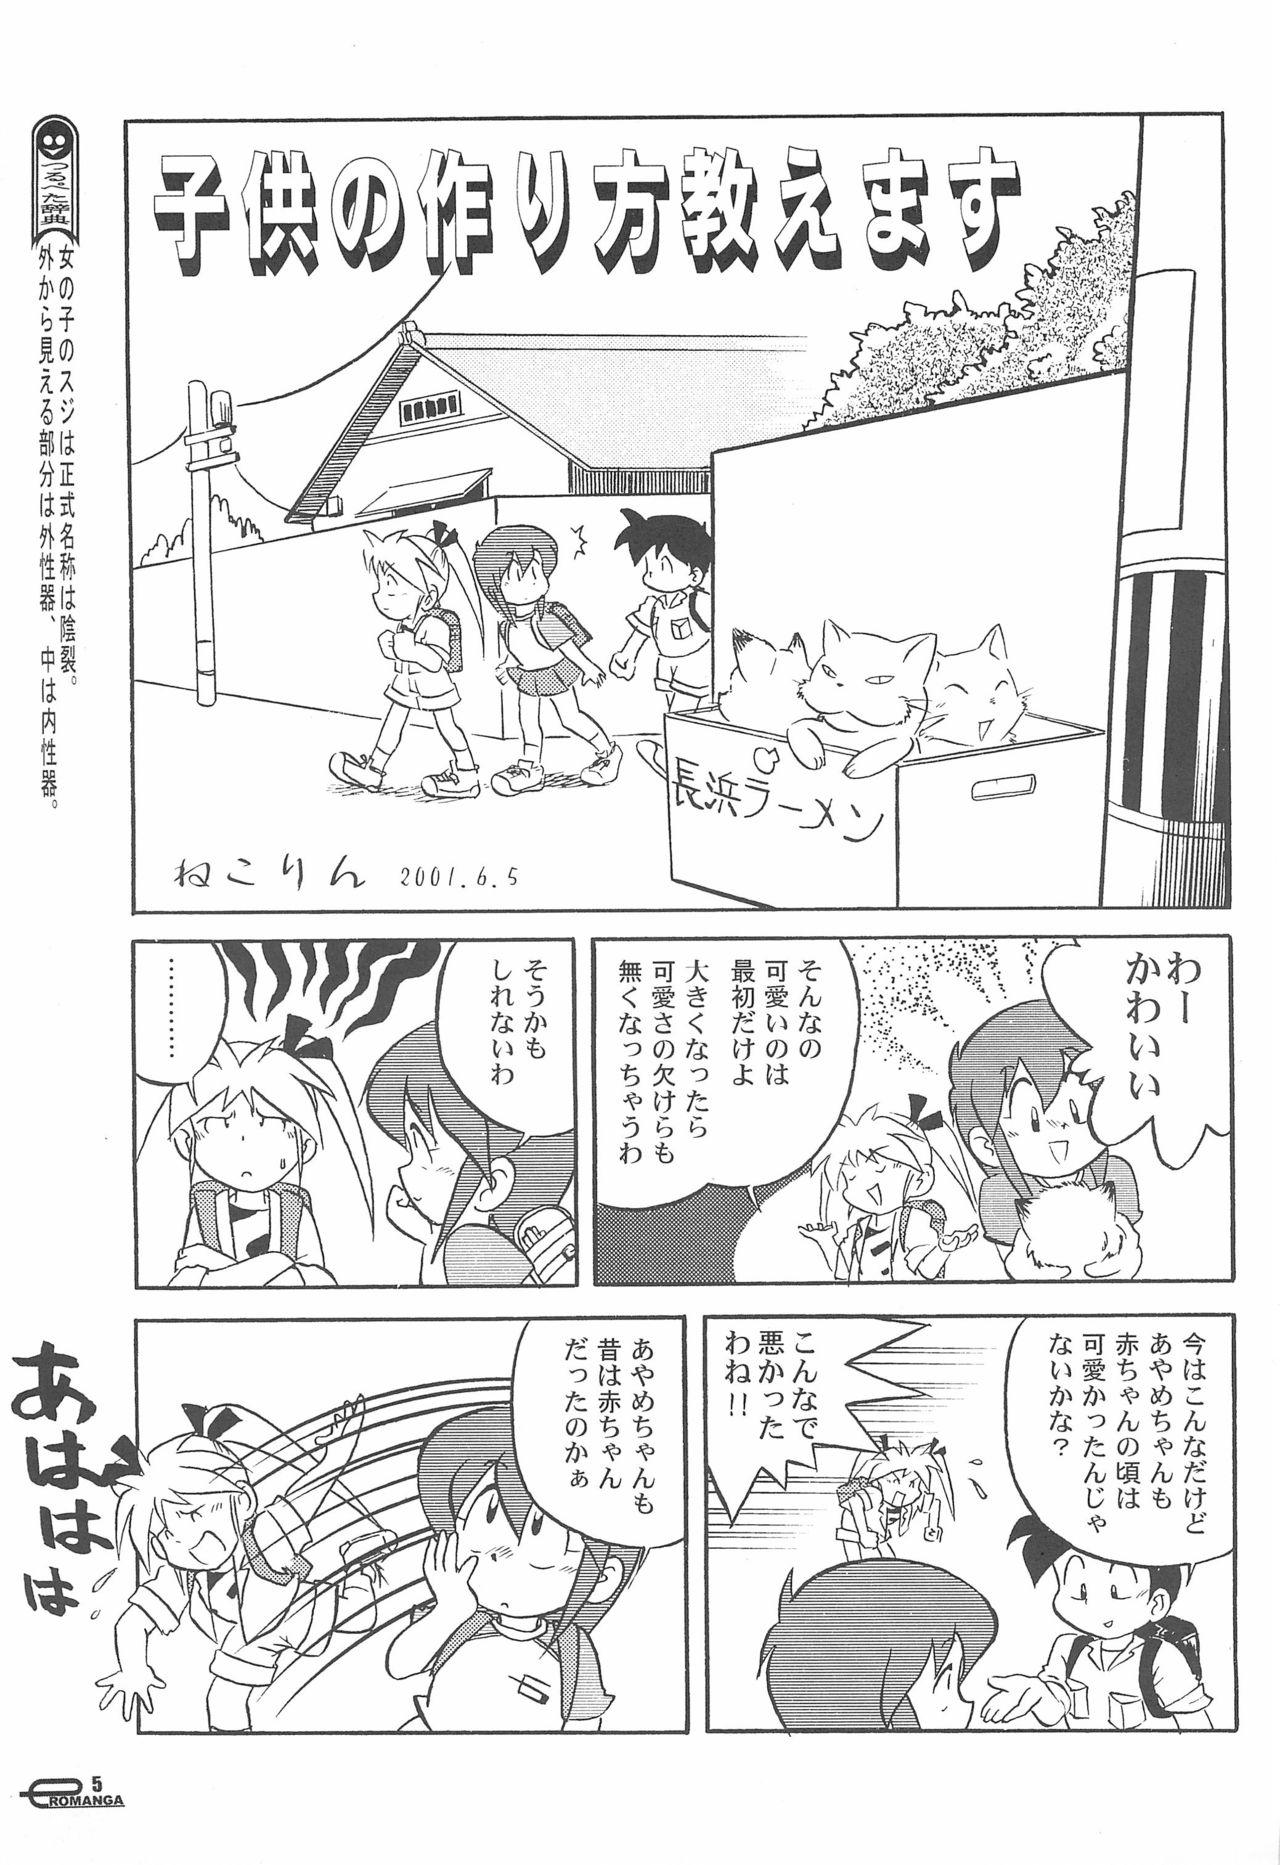 Innocent Manga Science Onna no ko no Himitsu - Manga science Blacksonboys - Page 7